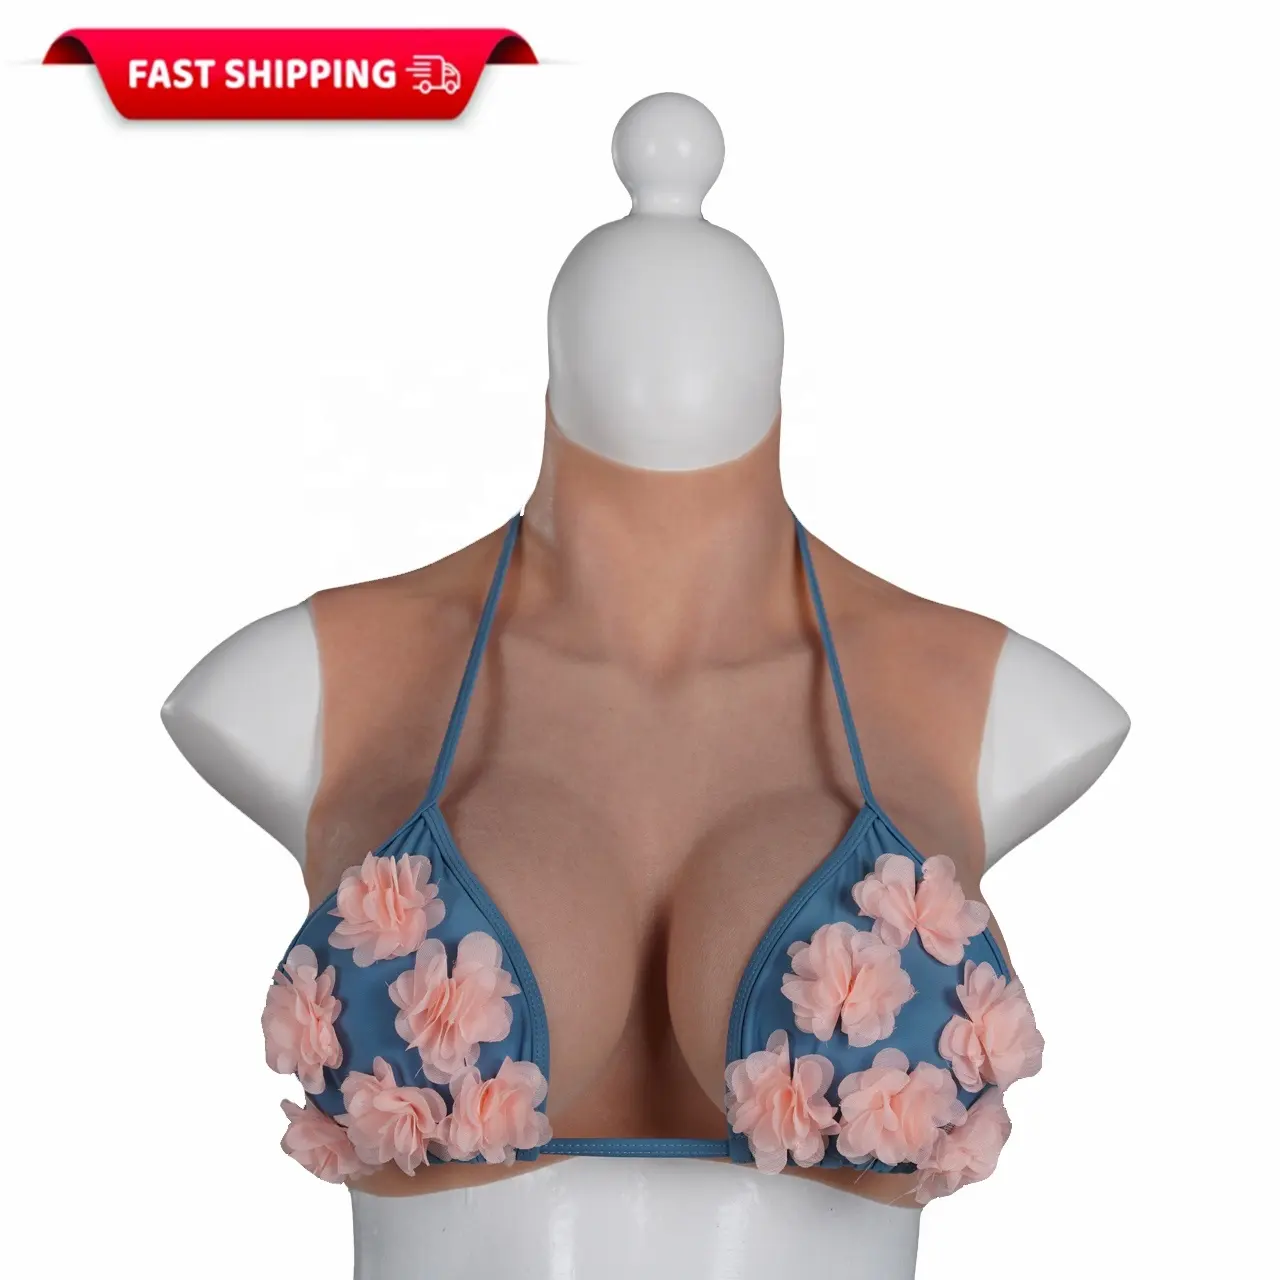 SentryMed乳がん切除用の高速配送フェイカーおっぱいシリコン乳房リアルな偽のおっぱい乳房フォーム